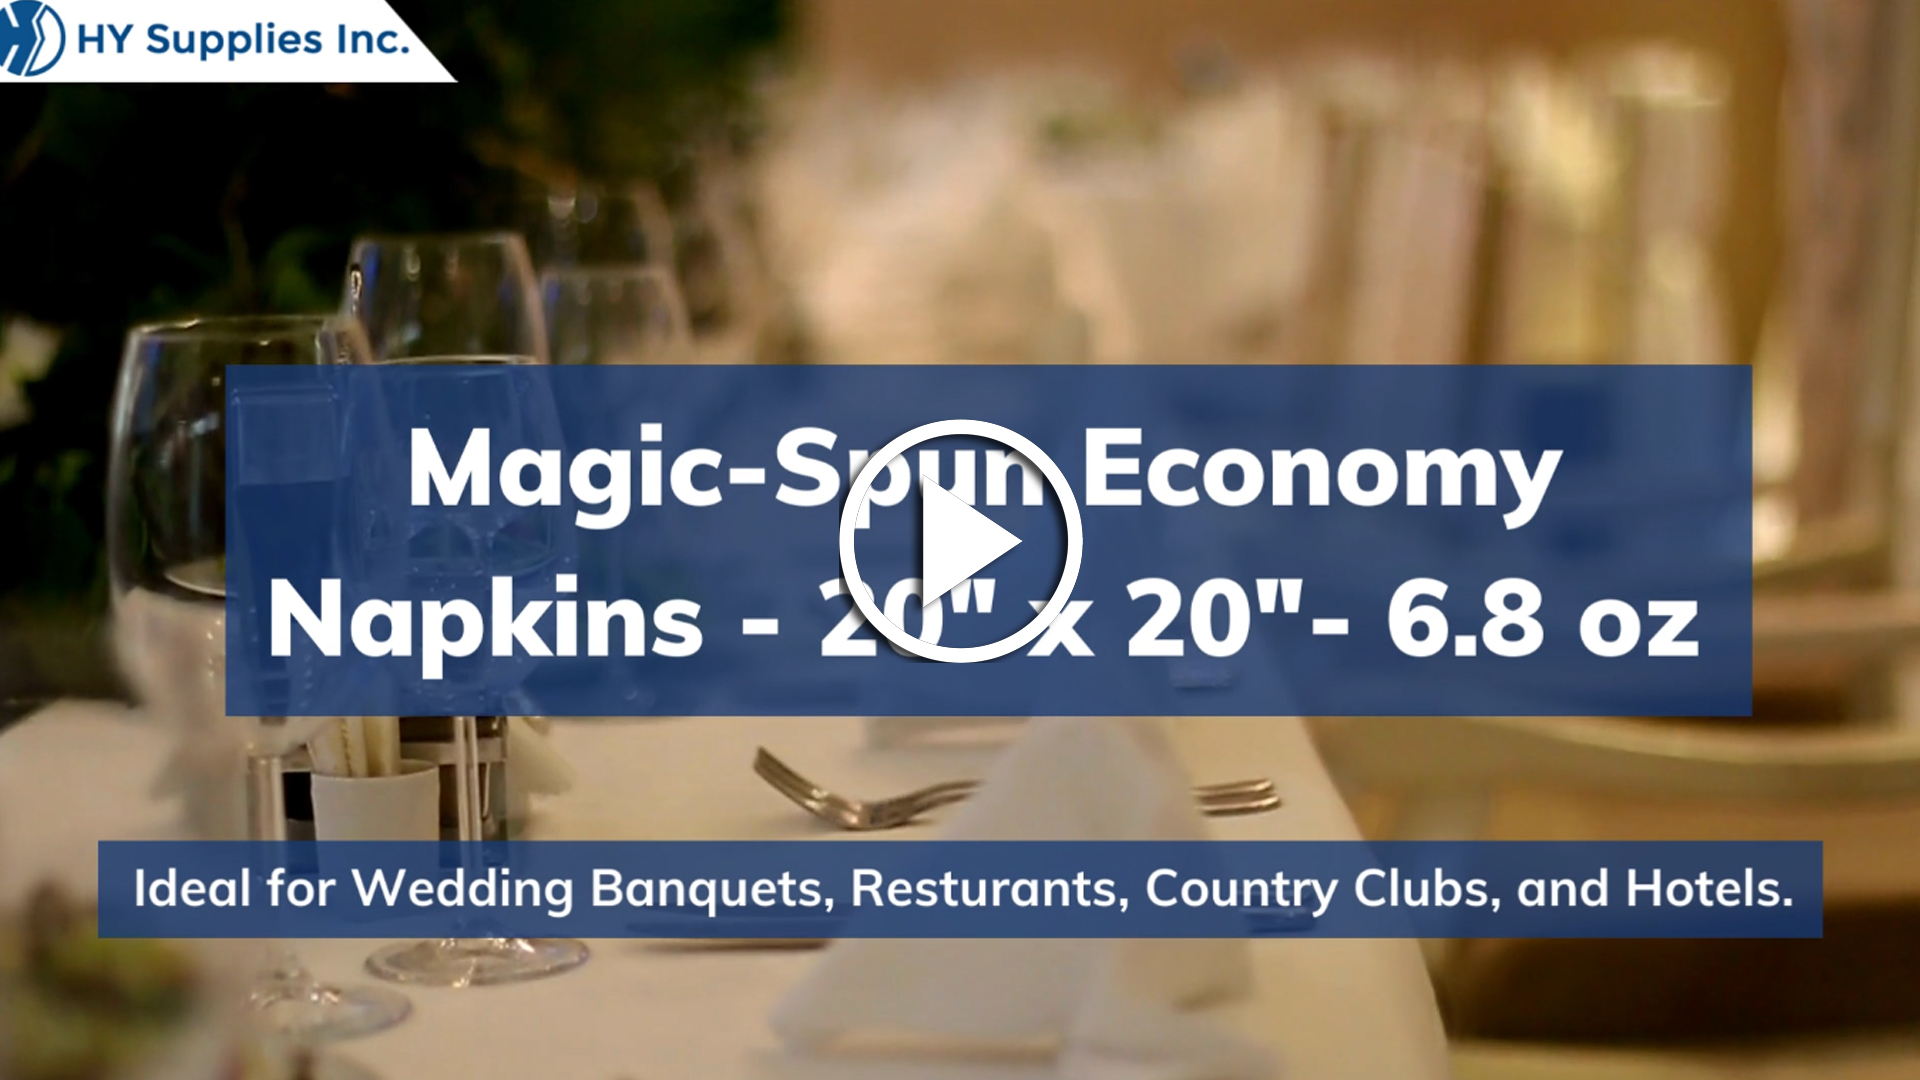 Magic-Spun Economy Napkins - 20" x 20"- 6.8 oz.